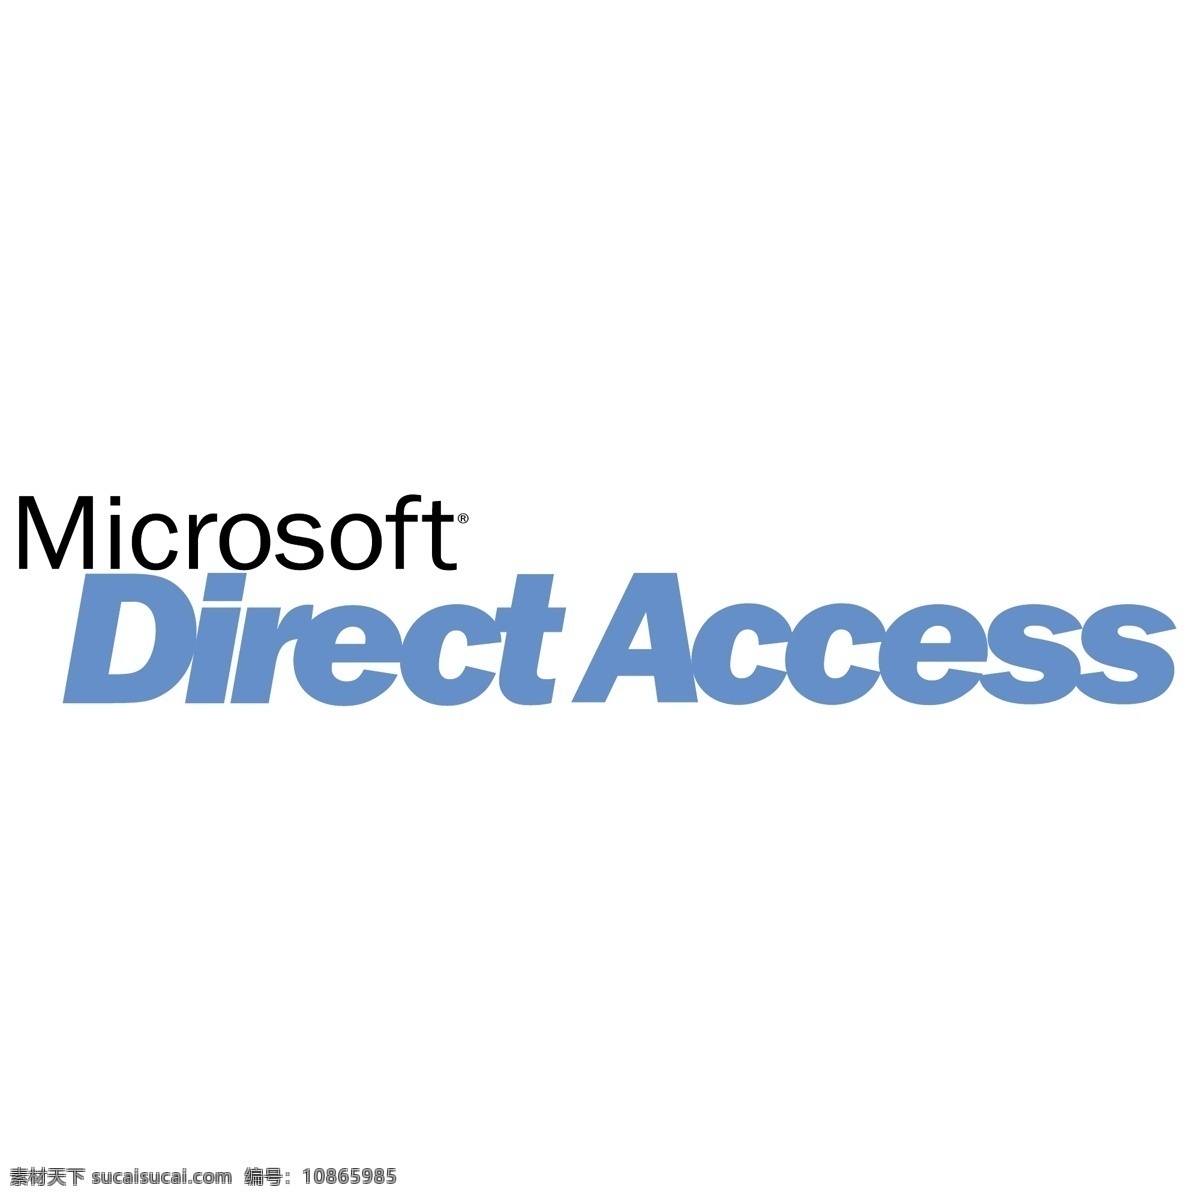 微软直接存取 微软 微软直接 直接 直接访问 访问 矢量 office access 向量 存取 办公室 标志 访问微软 矢量图 建筑家居